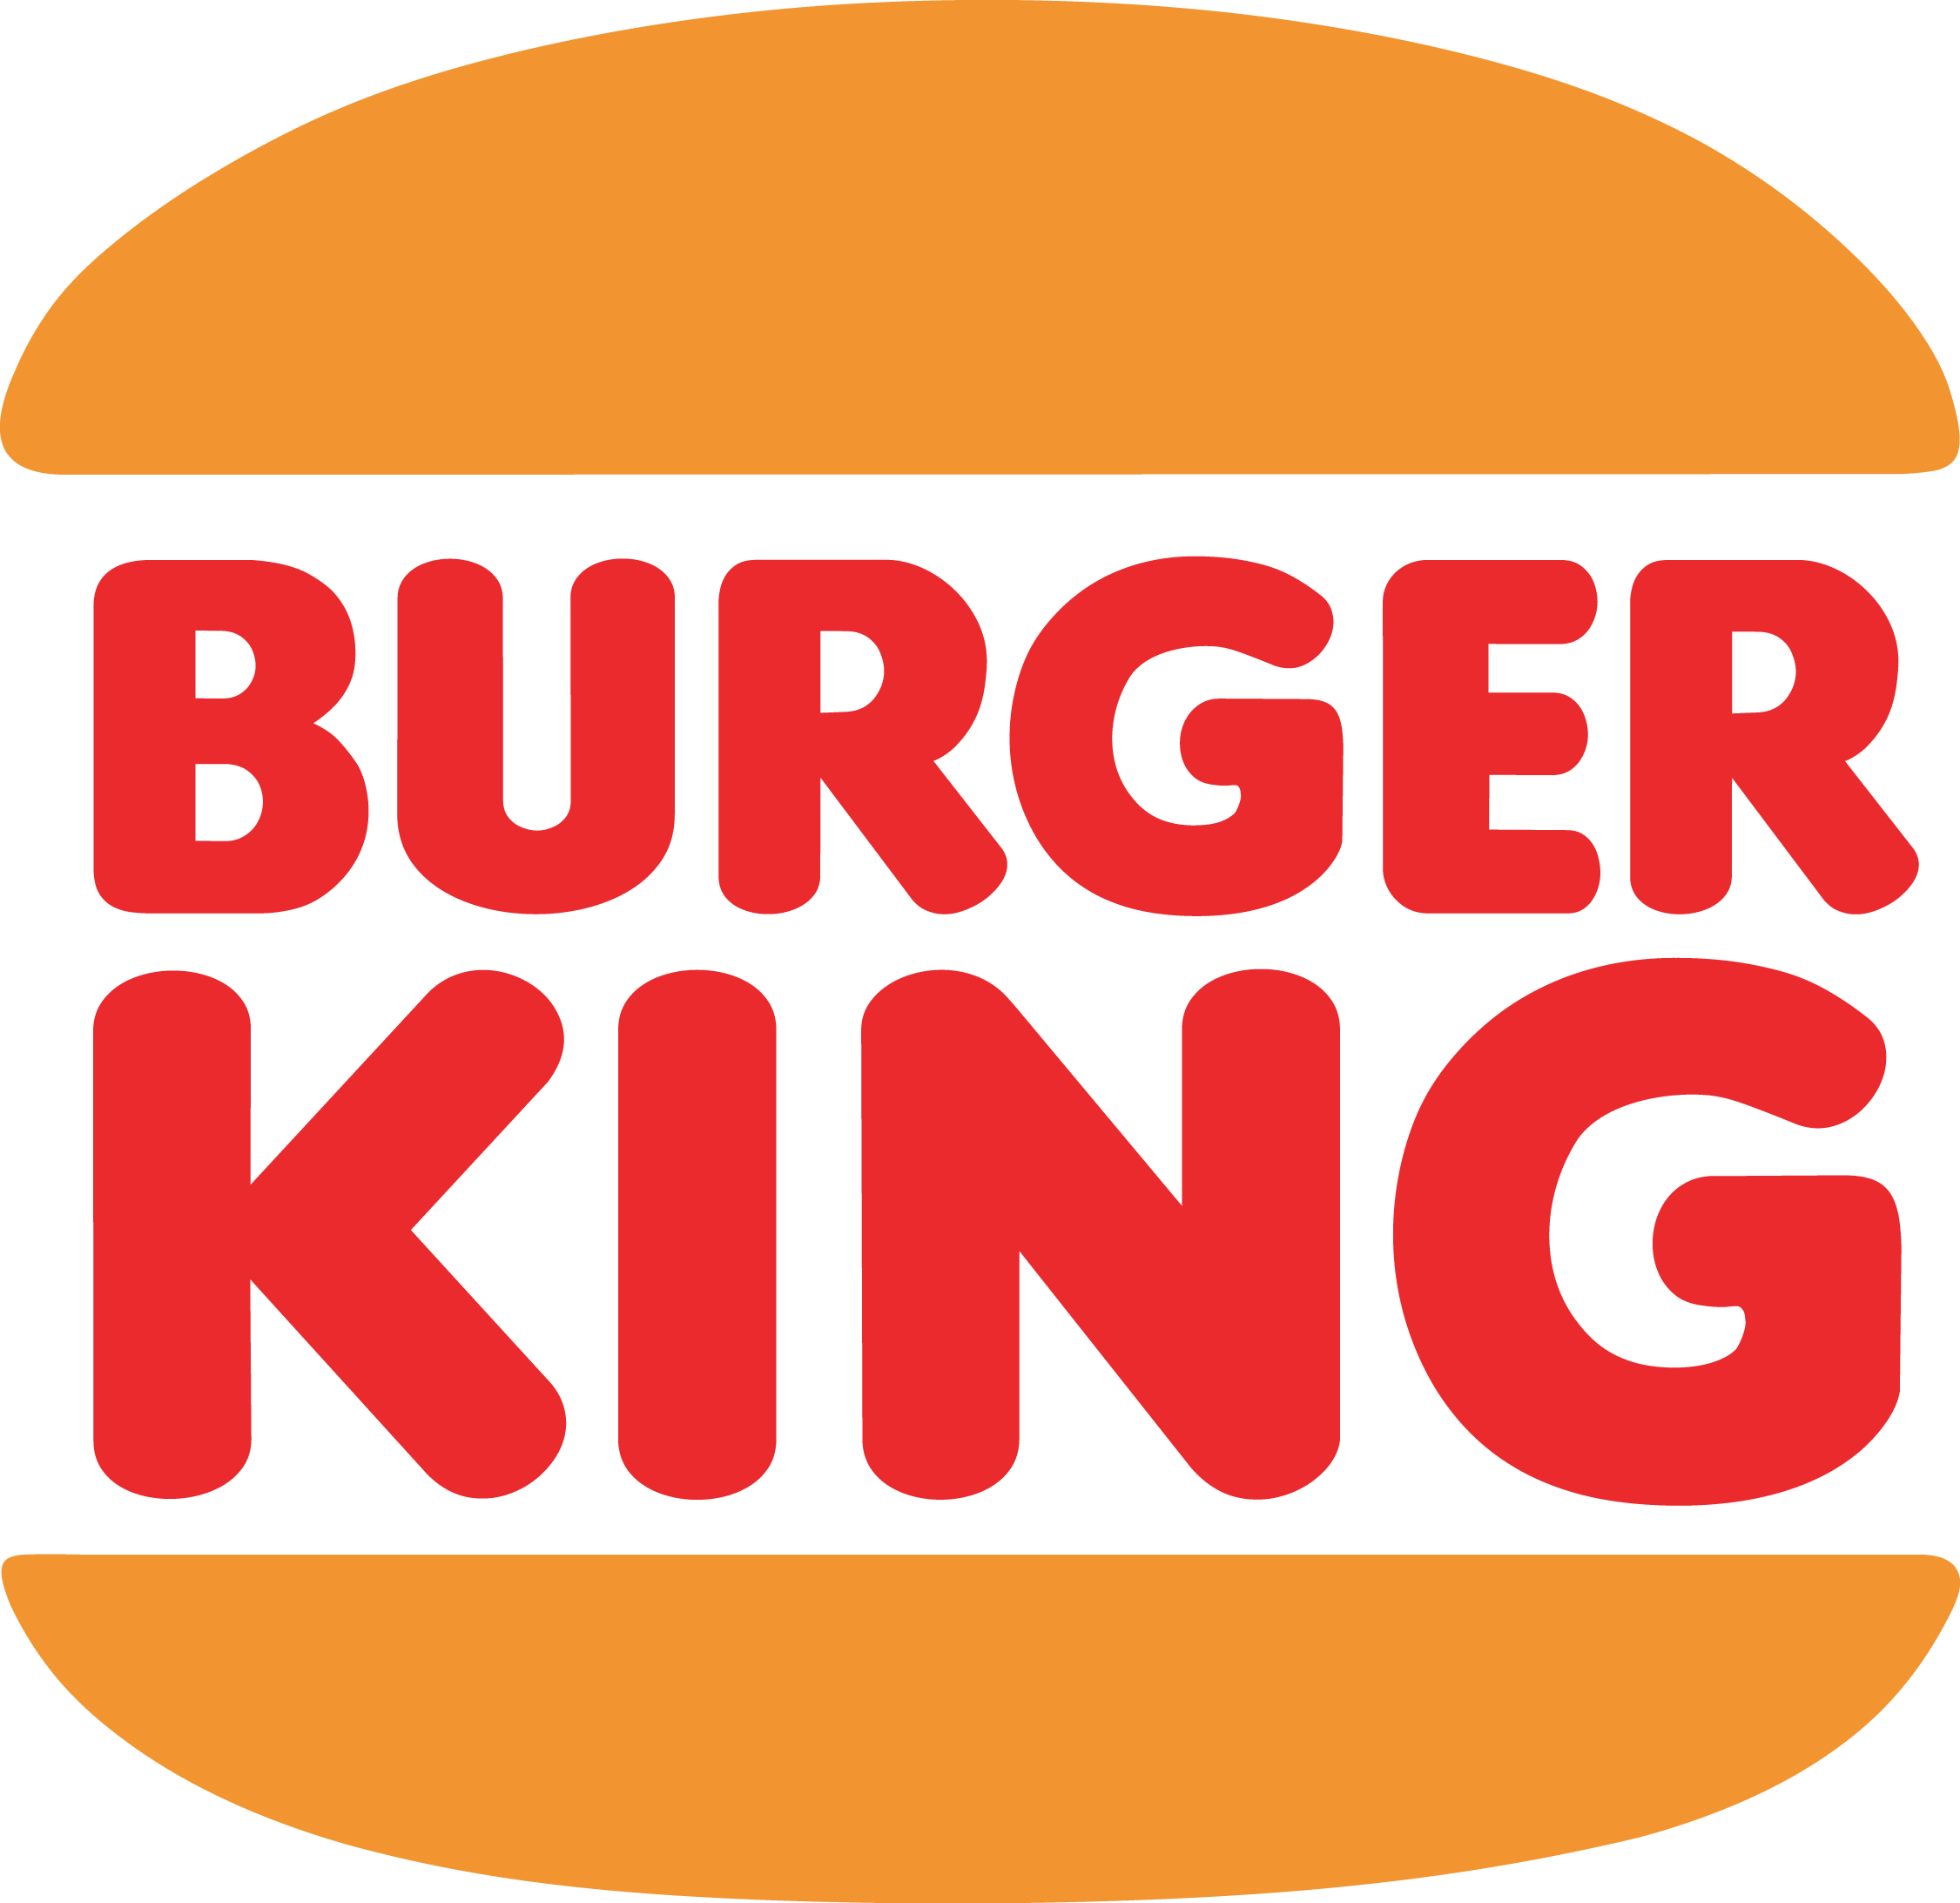 King Hamburger Food Fast Burger Logo The PNG Image